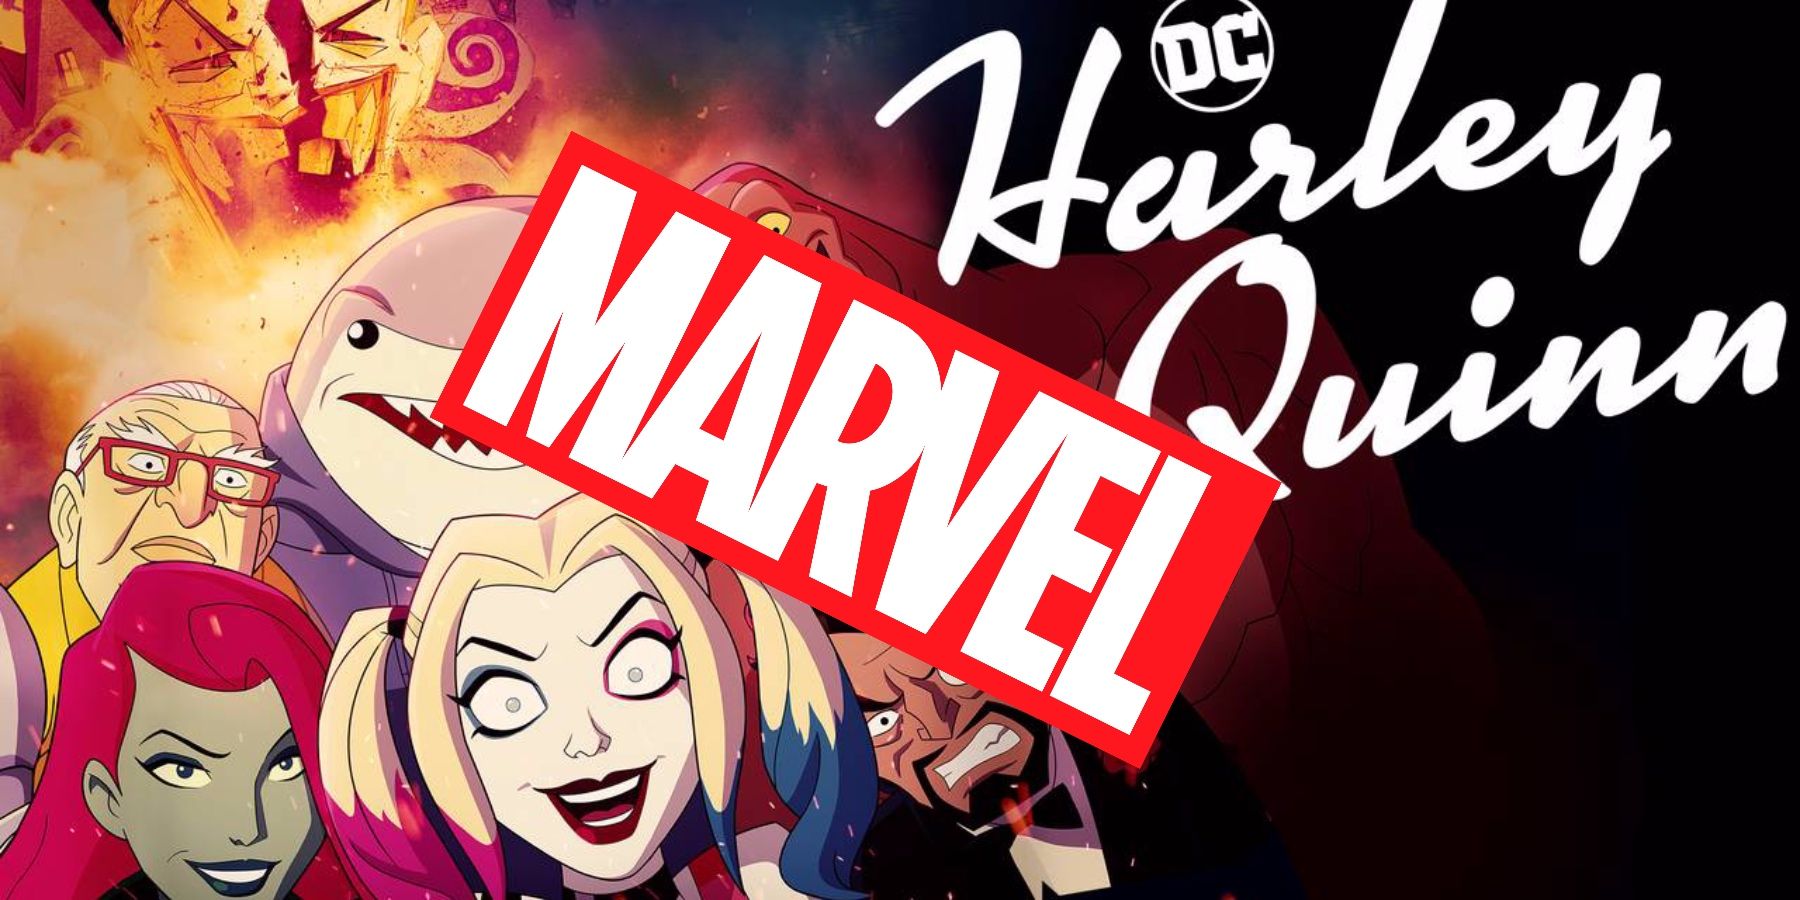 L’artista dello storyboard di Harley Quinn dirigerà un progetto Marvel non annunciato